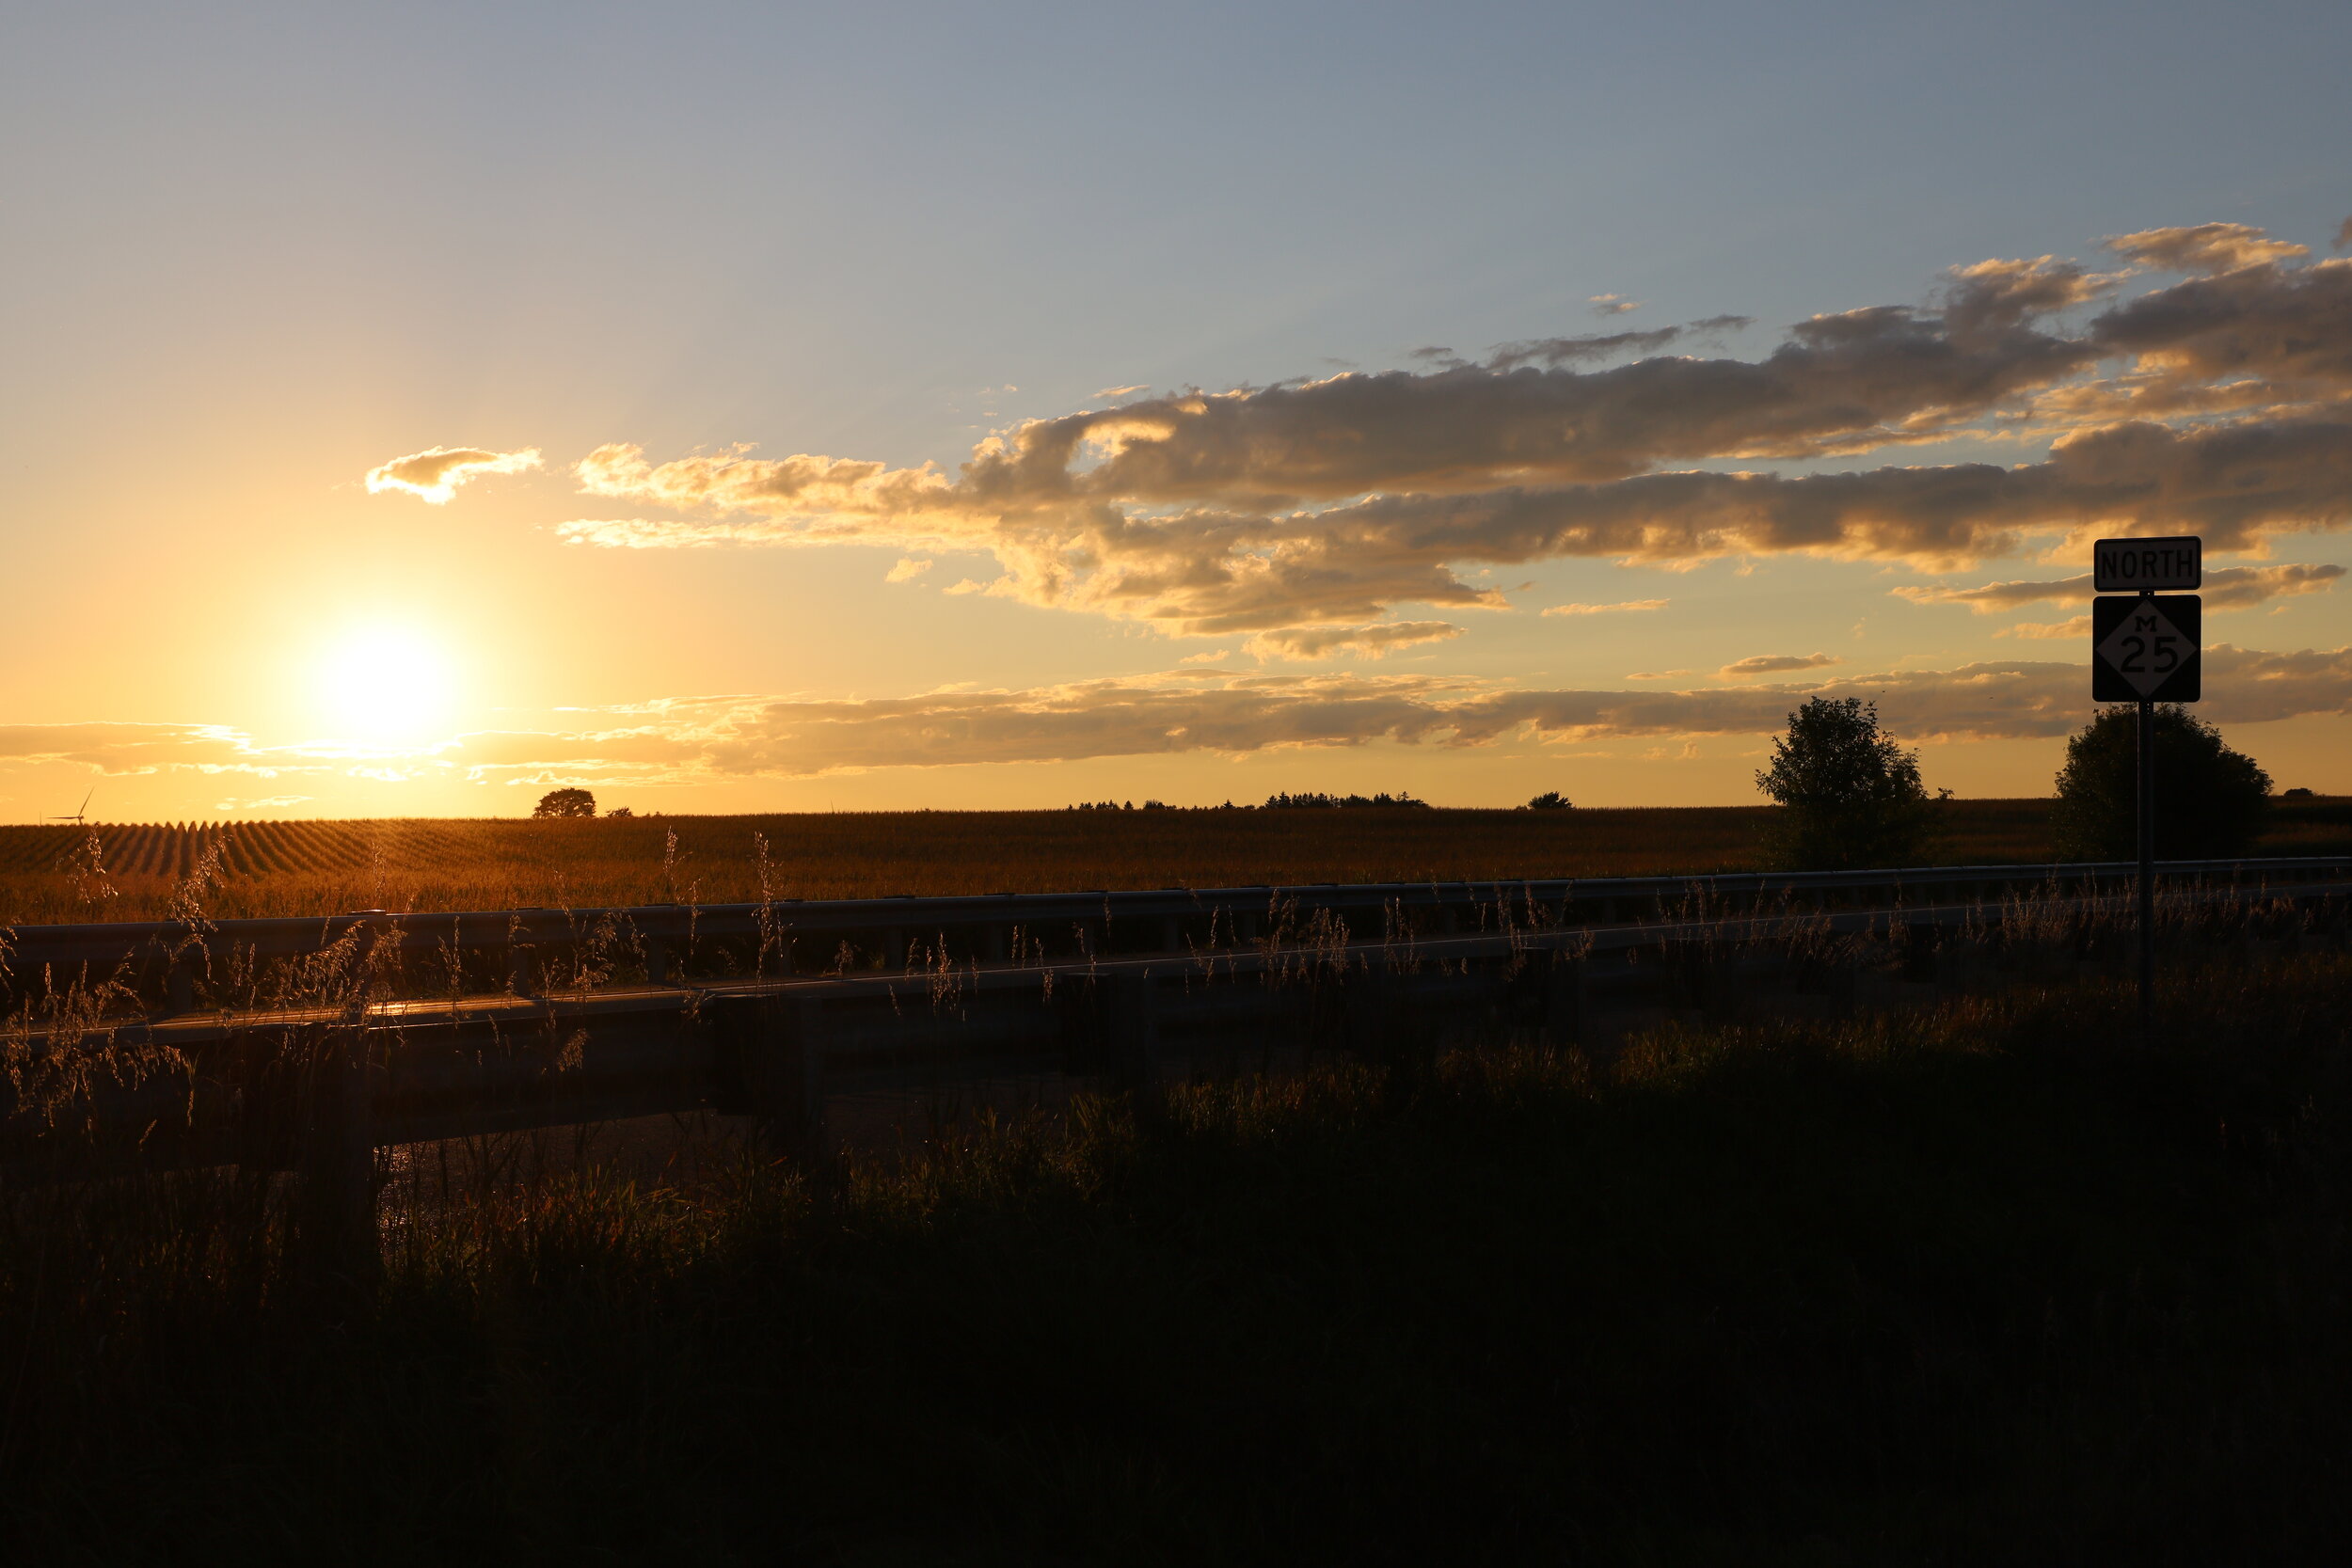 North M-25 darker - sunset, farm field, wind turbine, sky.JPG